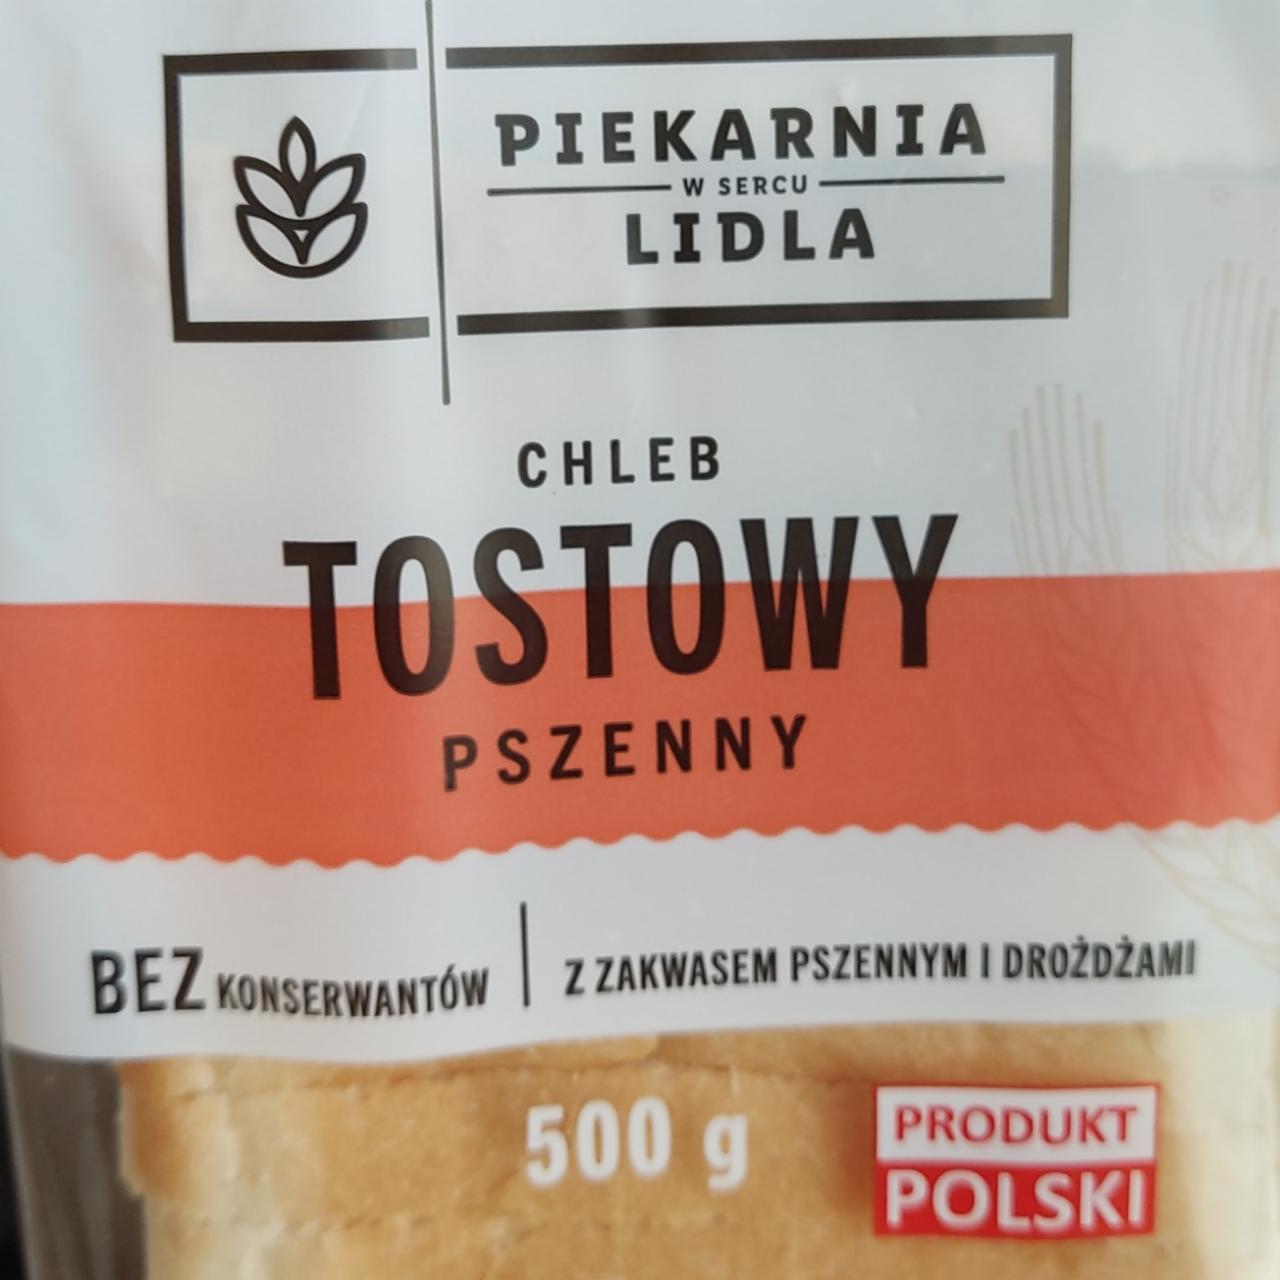 Фото - хлеб тостовый пшеничный Piekarnia Lidla